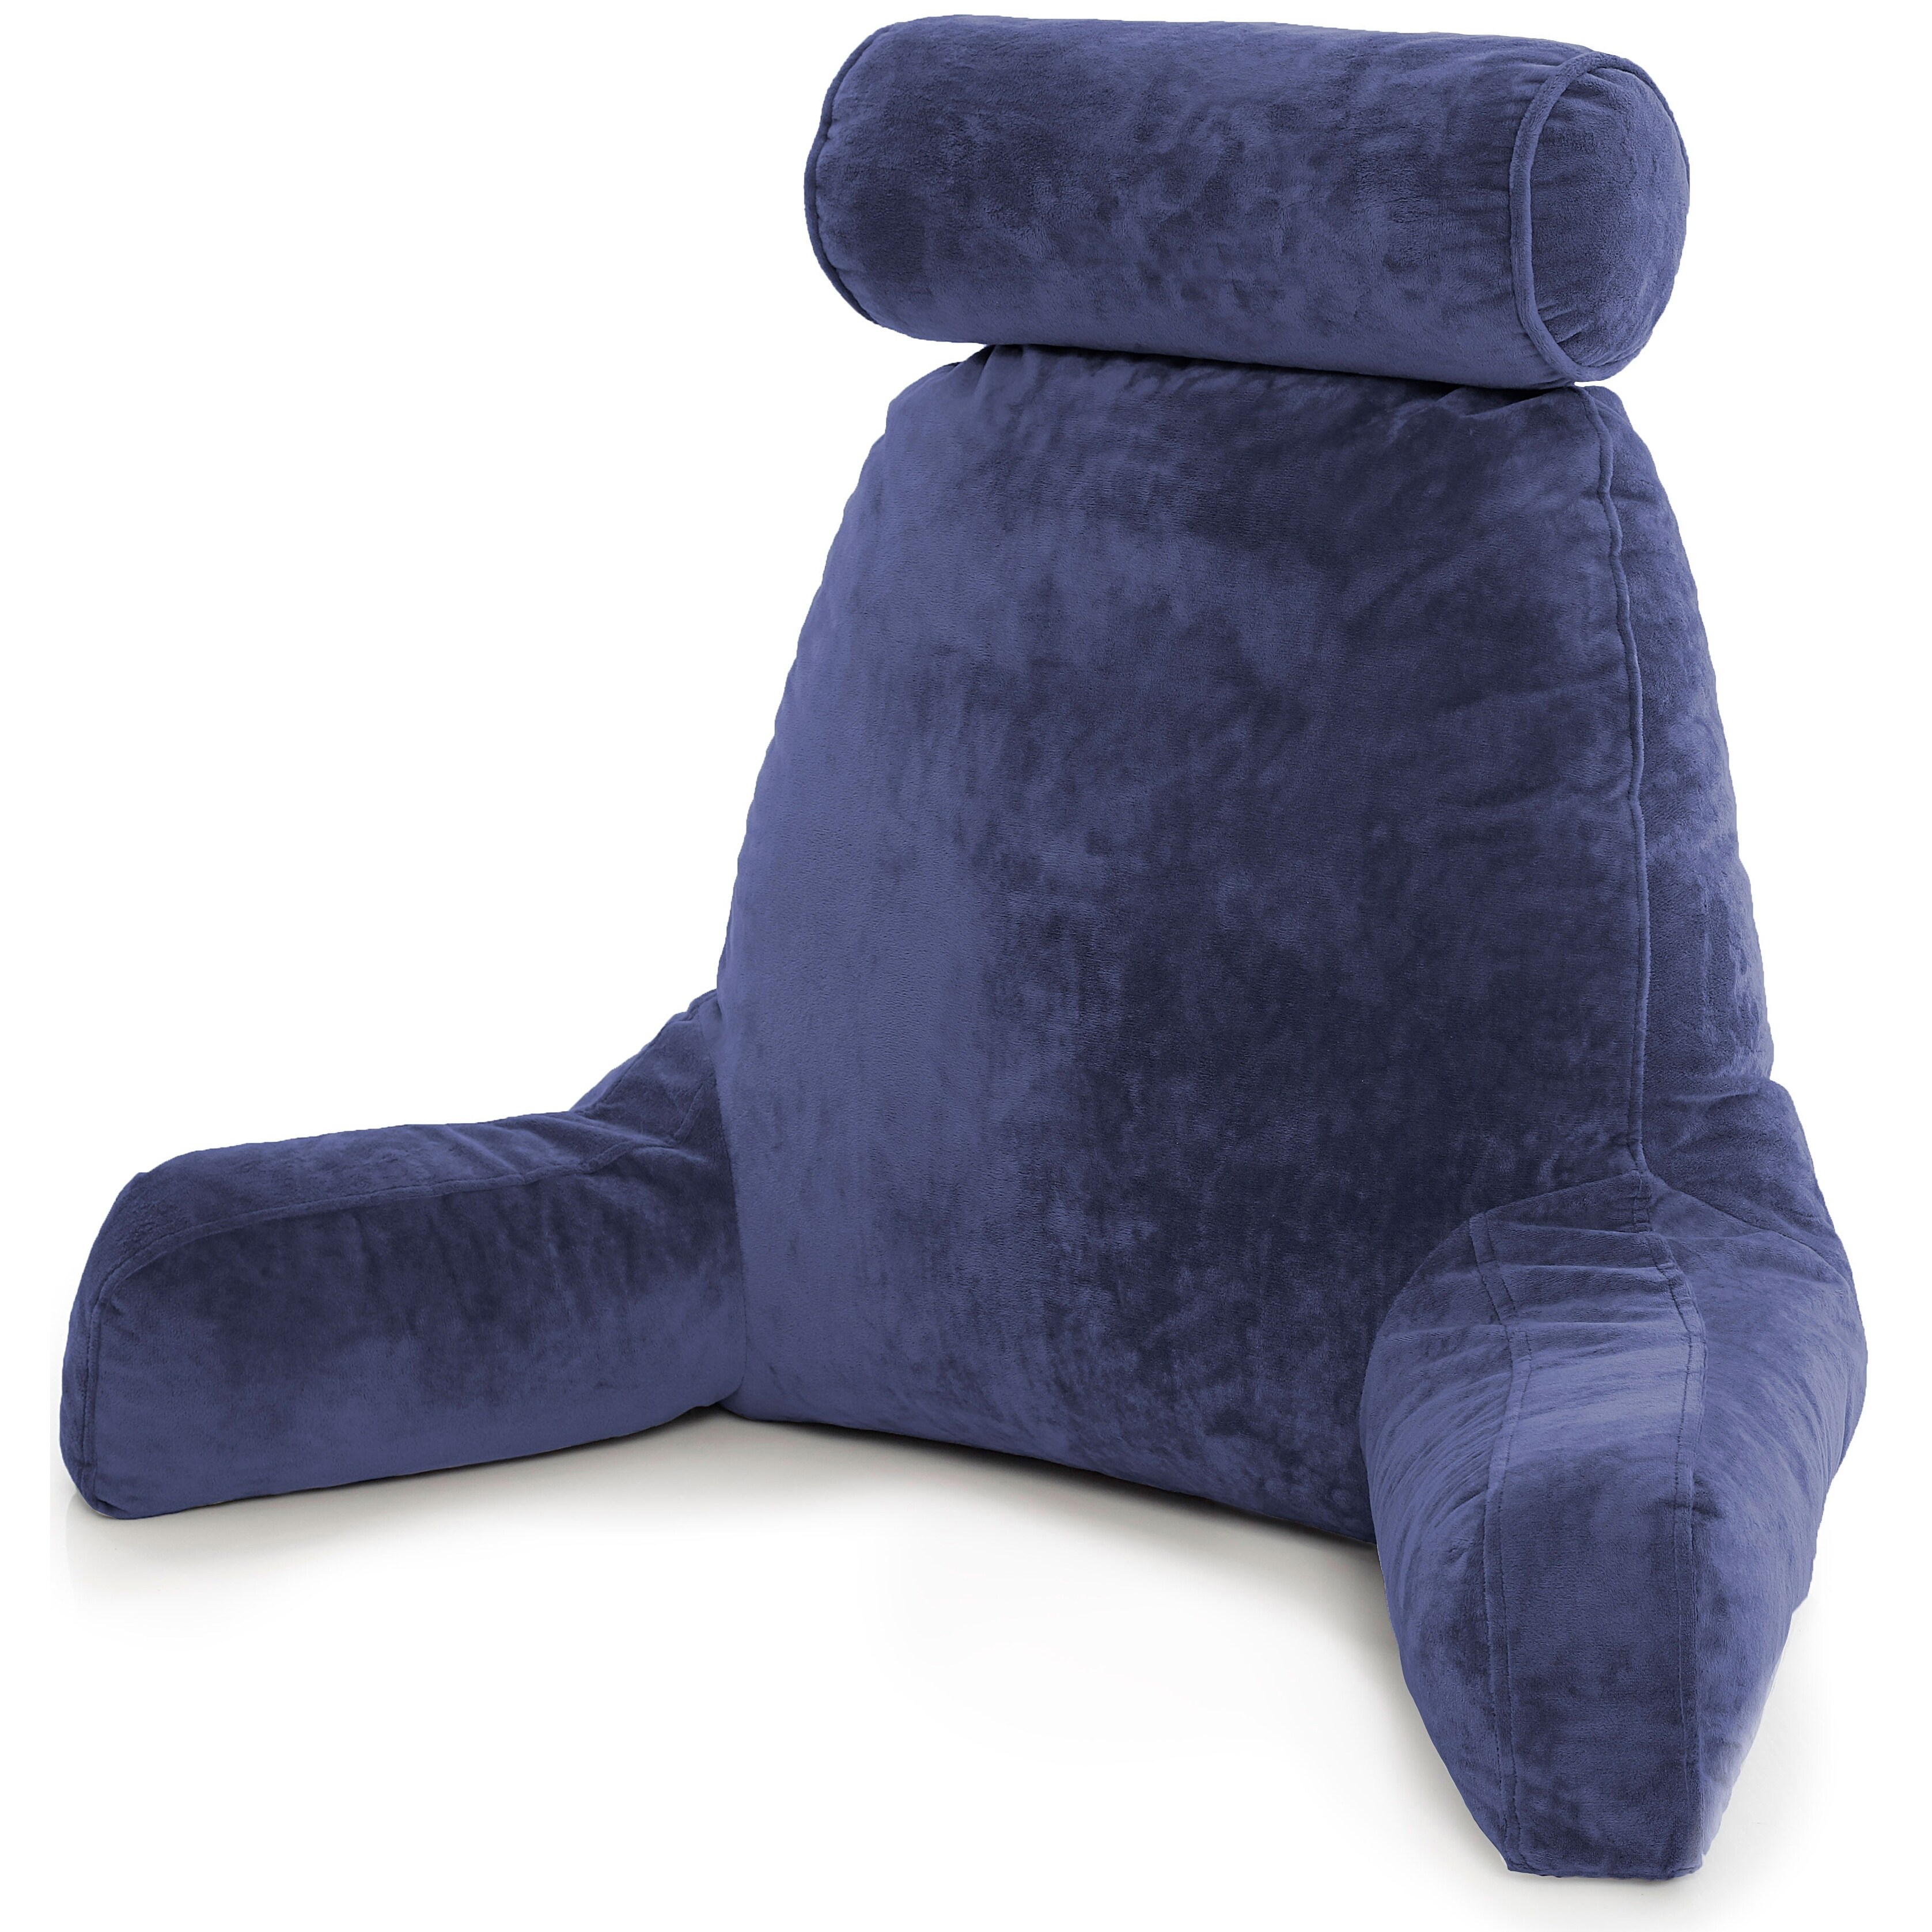 https://ak1.ostkcdn.com/images/products/30264505/Husband-Pillow-Bedrest-Reading-Support-Bed-Backrest-w-Arms-Shredded-Foam-Reading-Pillow-Bed-Rest-Pillow-6a99aa34-3e5a-42f9-8736-05bb37b07a35.jpg